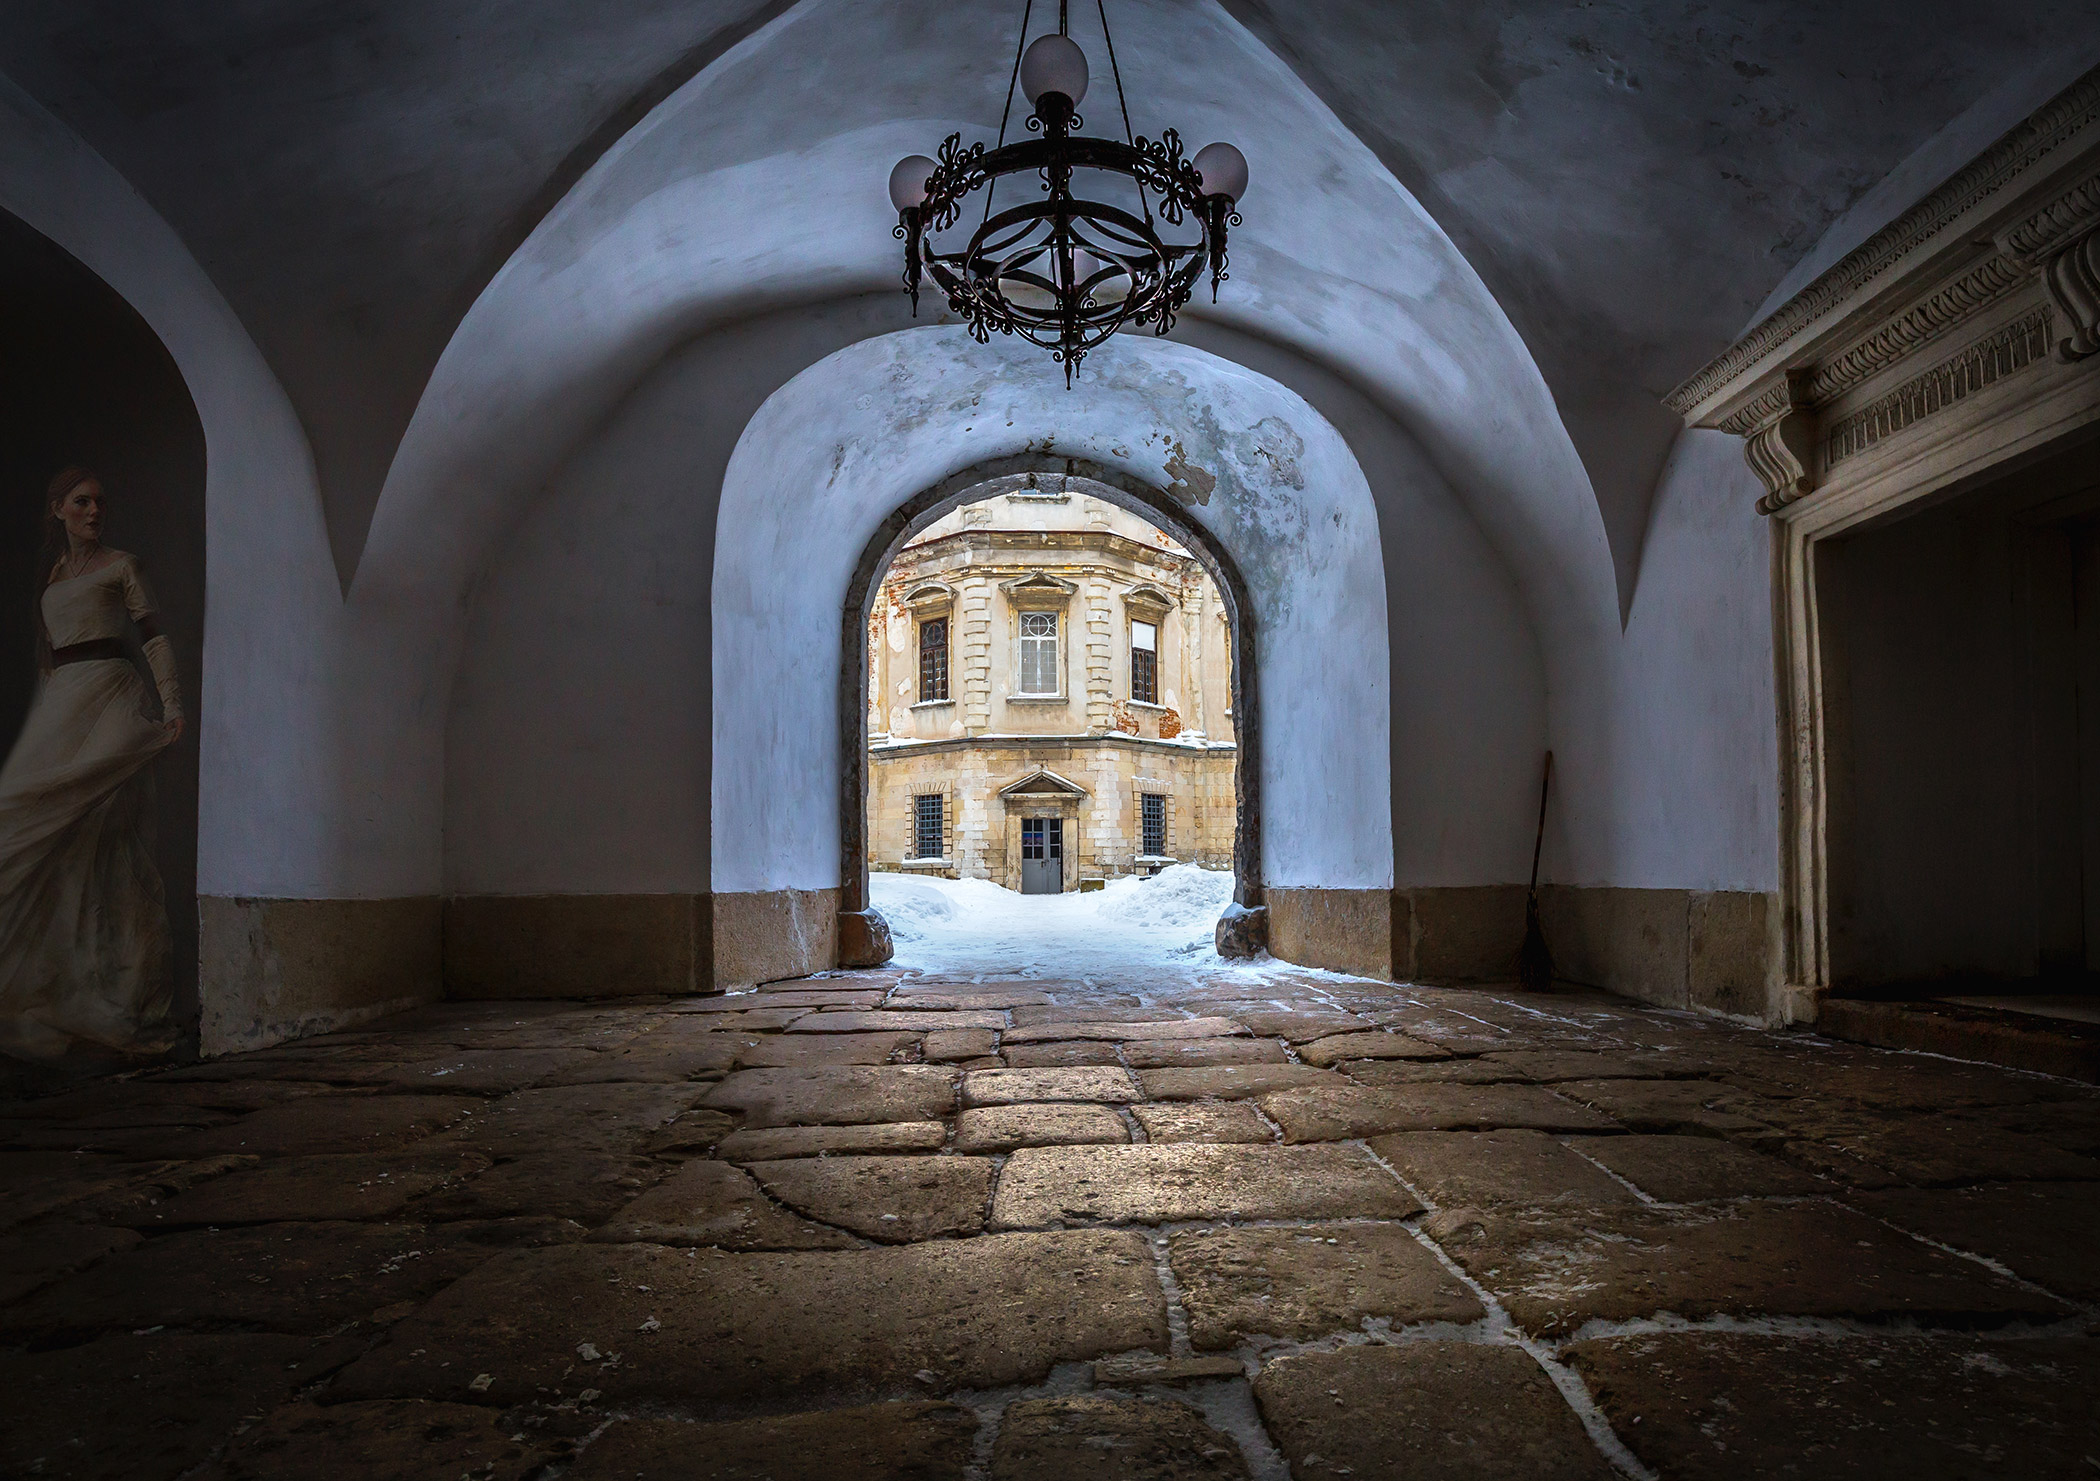 Подгорецкий замок — замок с привидением, фото-5